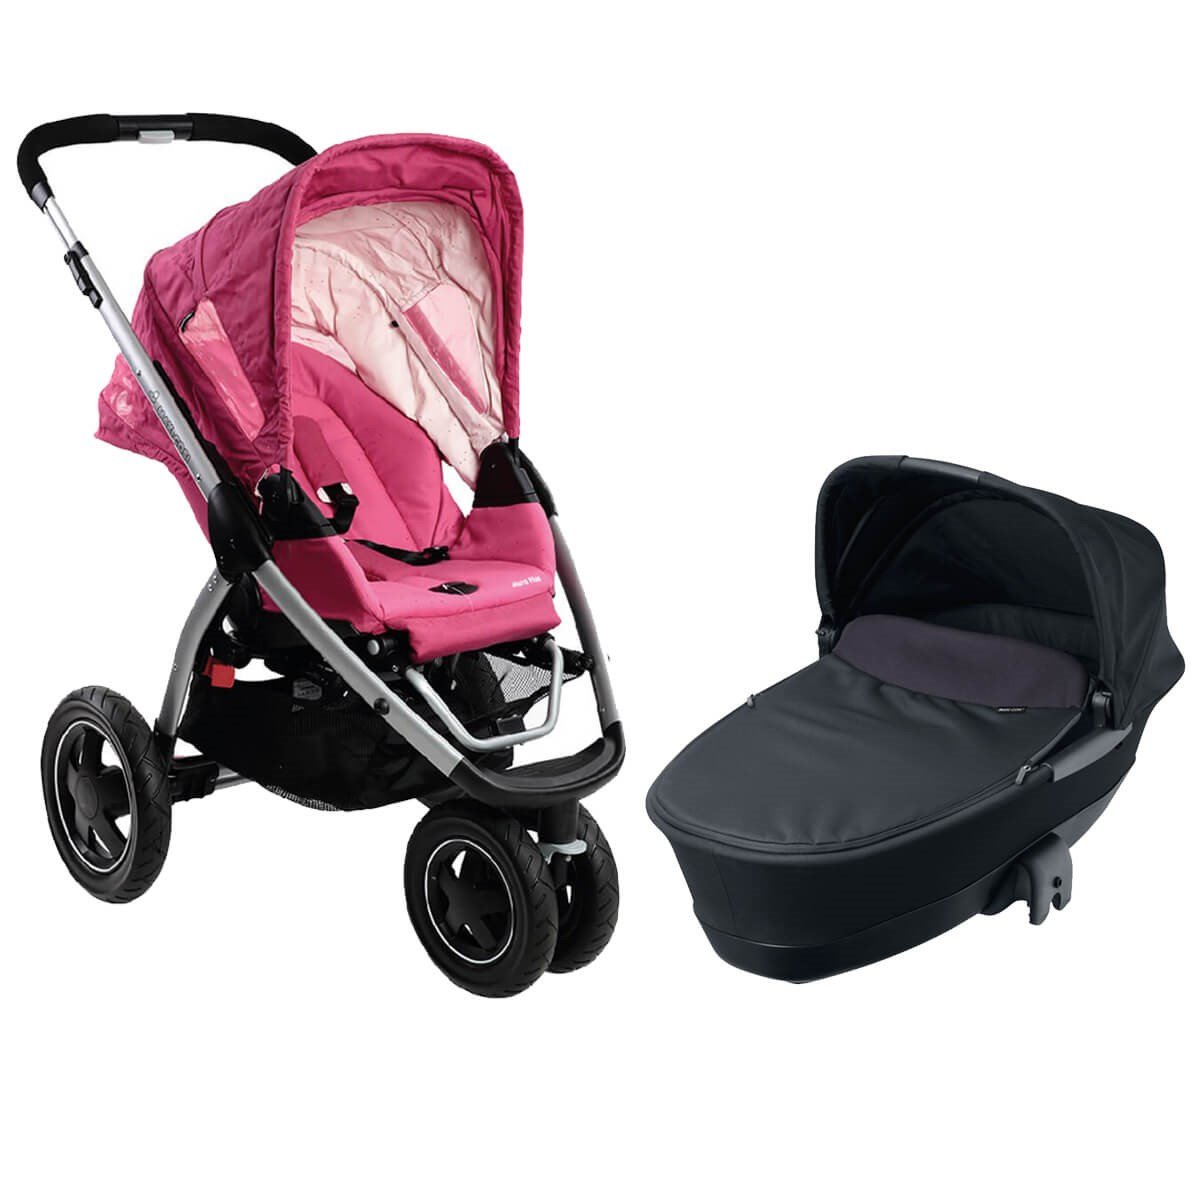 Maxi-Cosi Mura Plus 3 Bebek Arabası & Katlanır Portbebe / Berry Pink